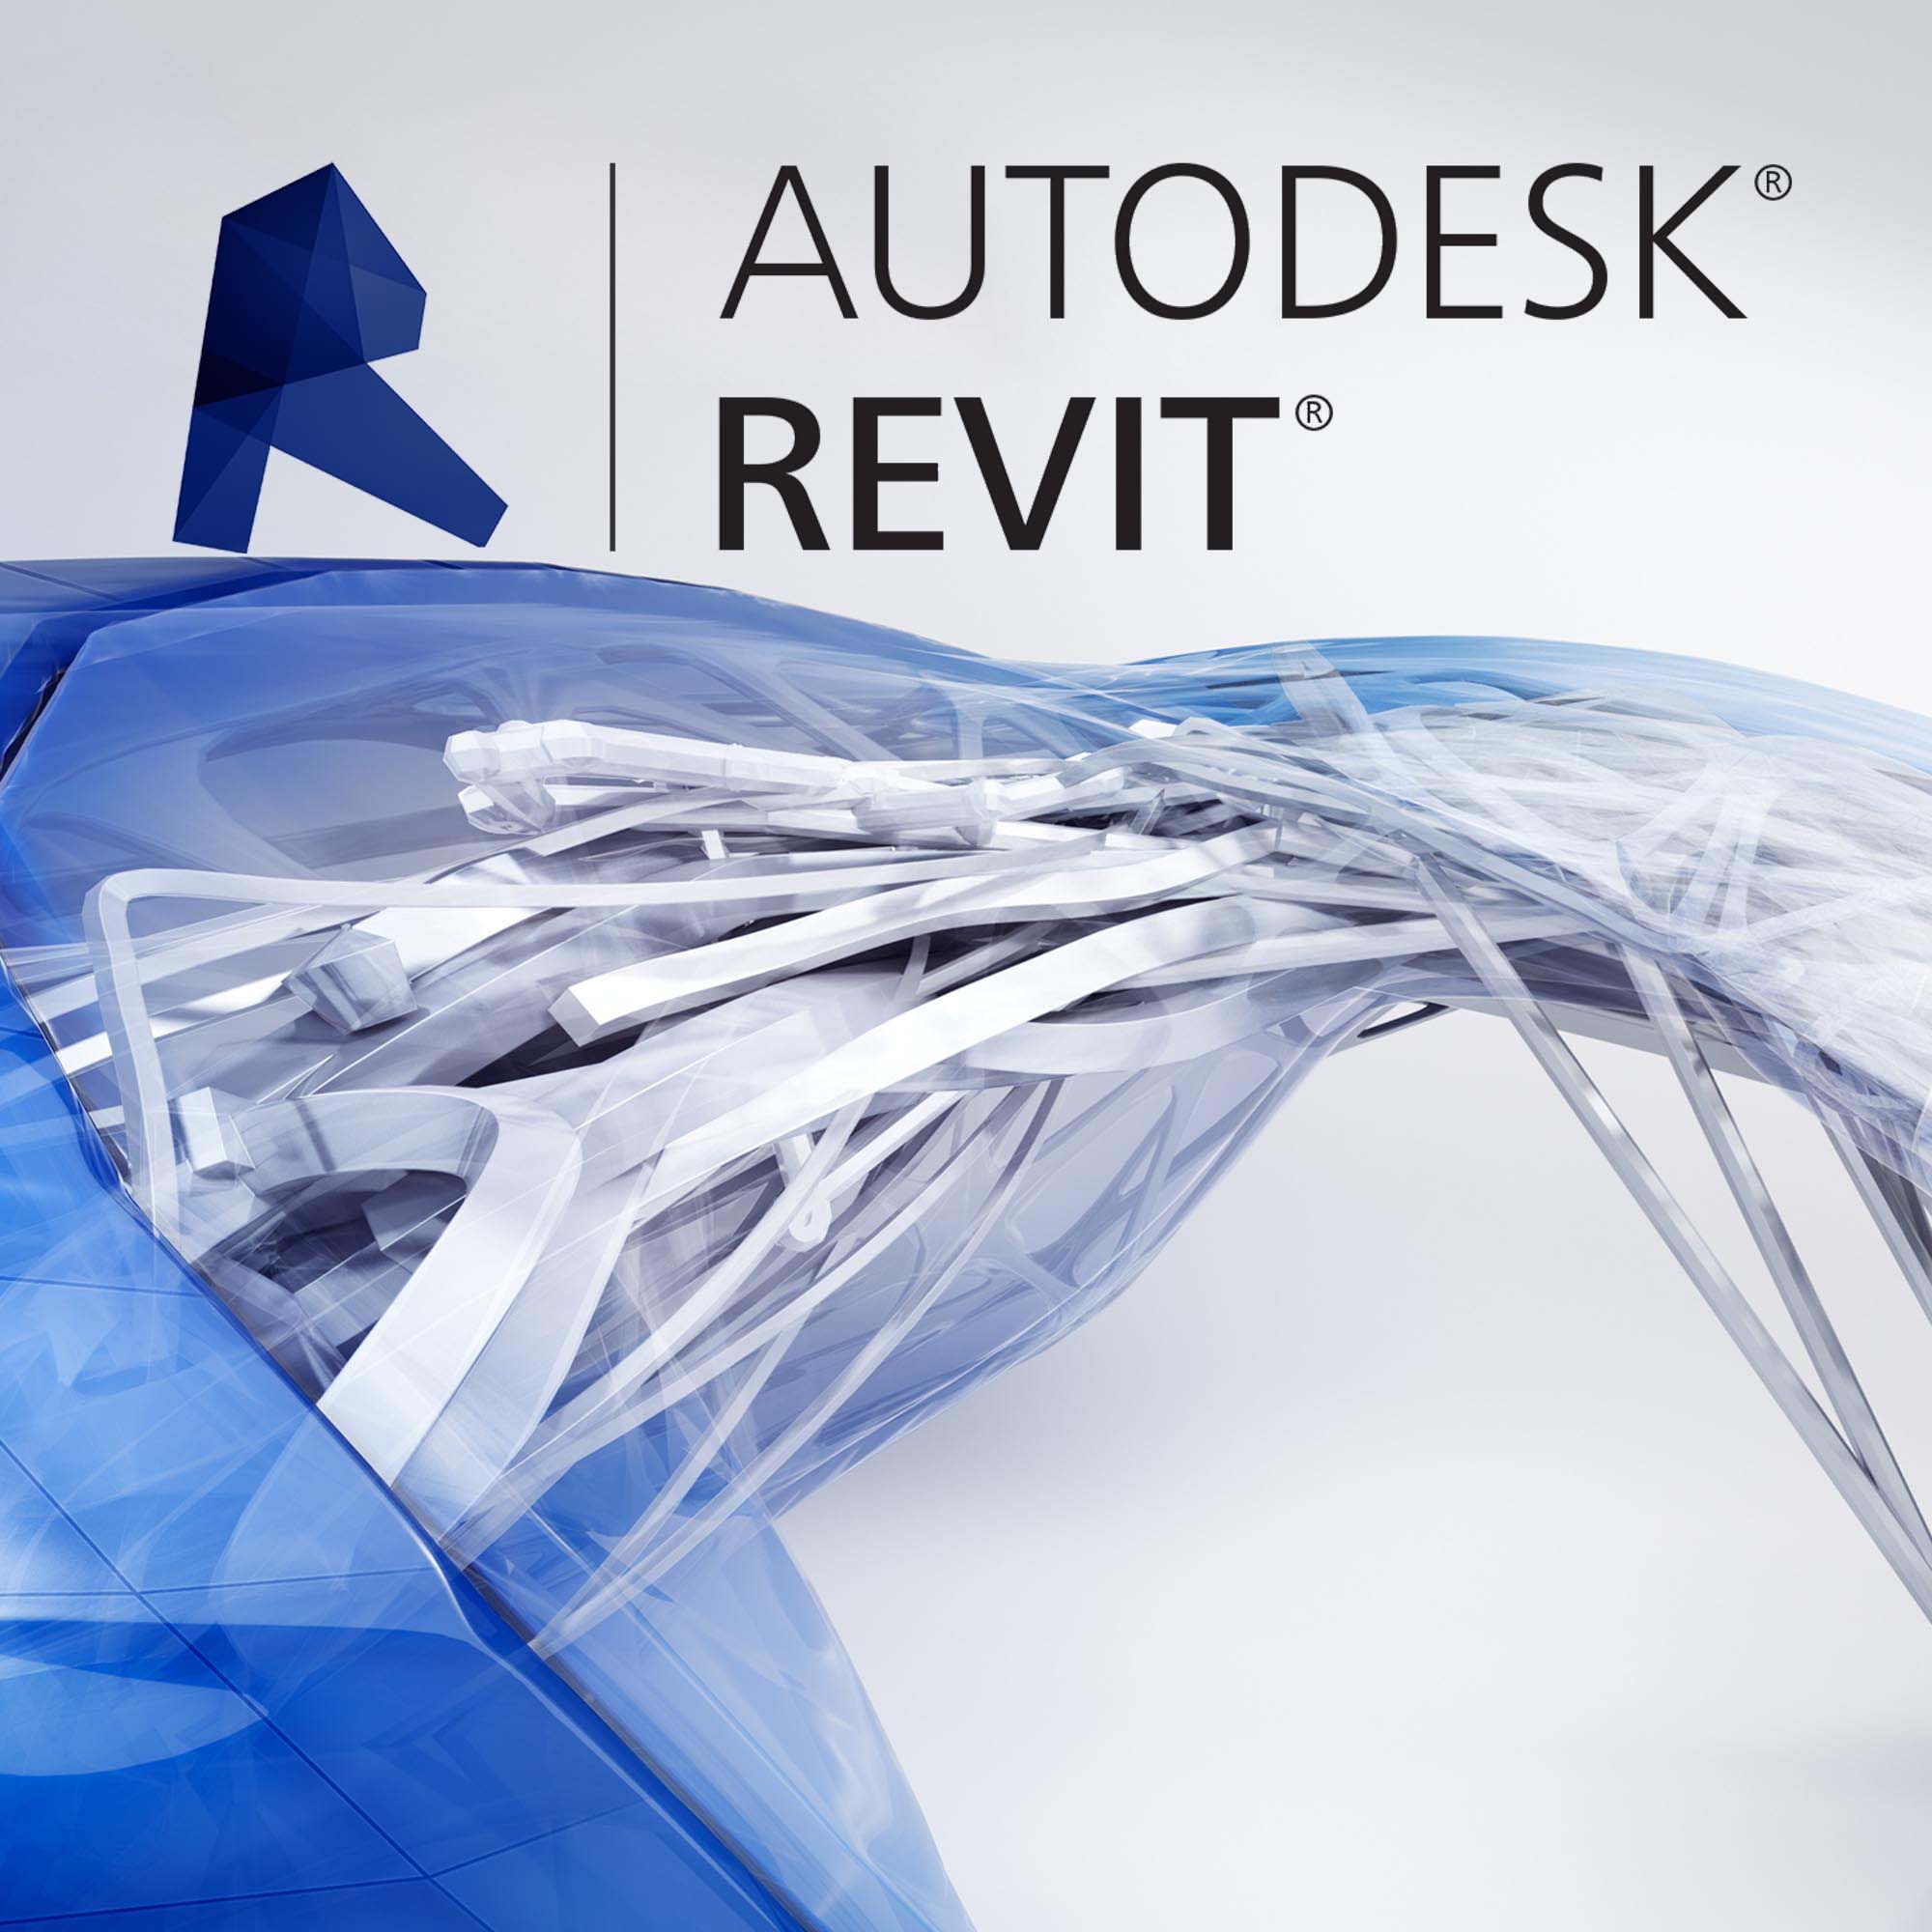 Revit - CAD software advantages